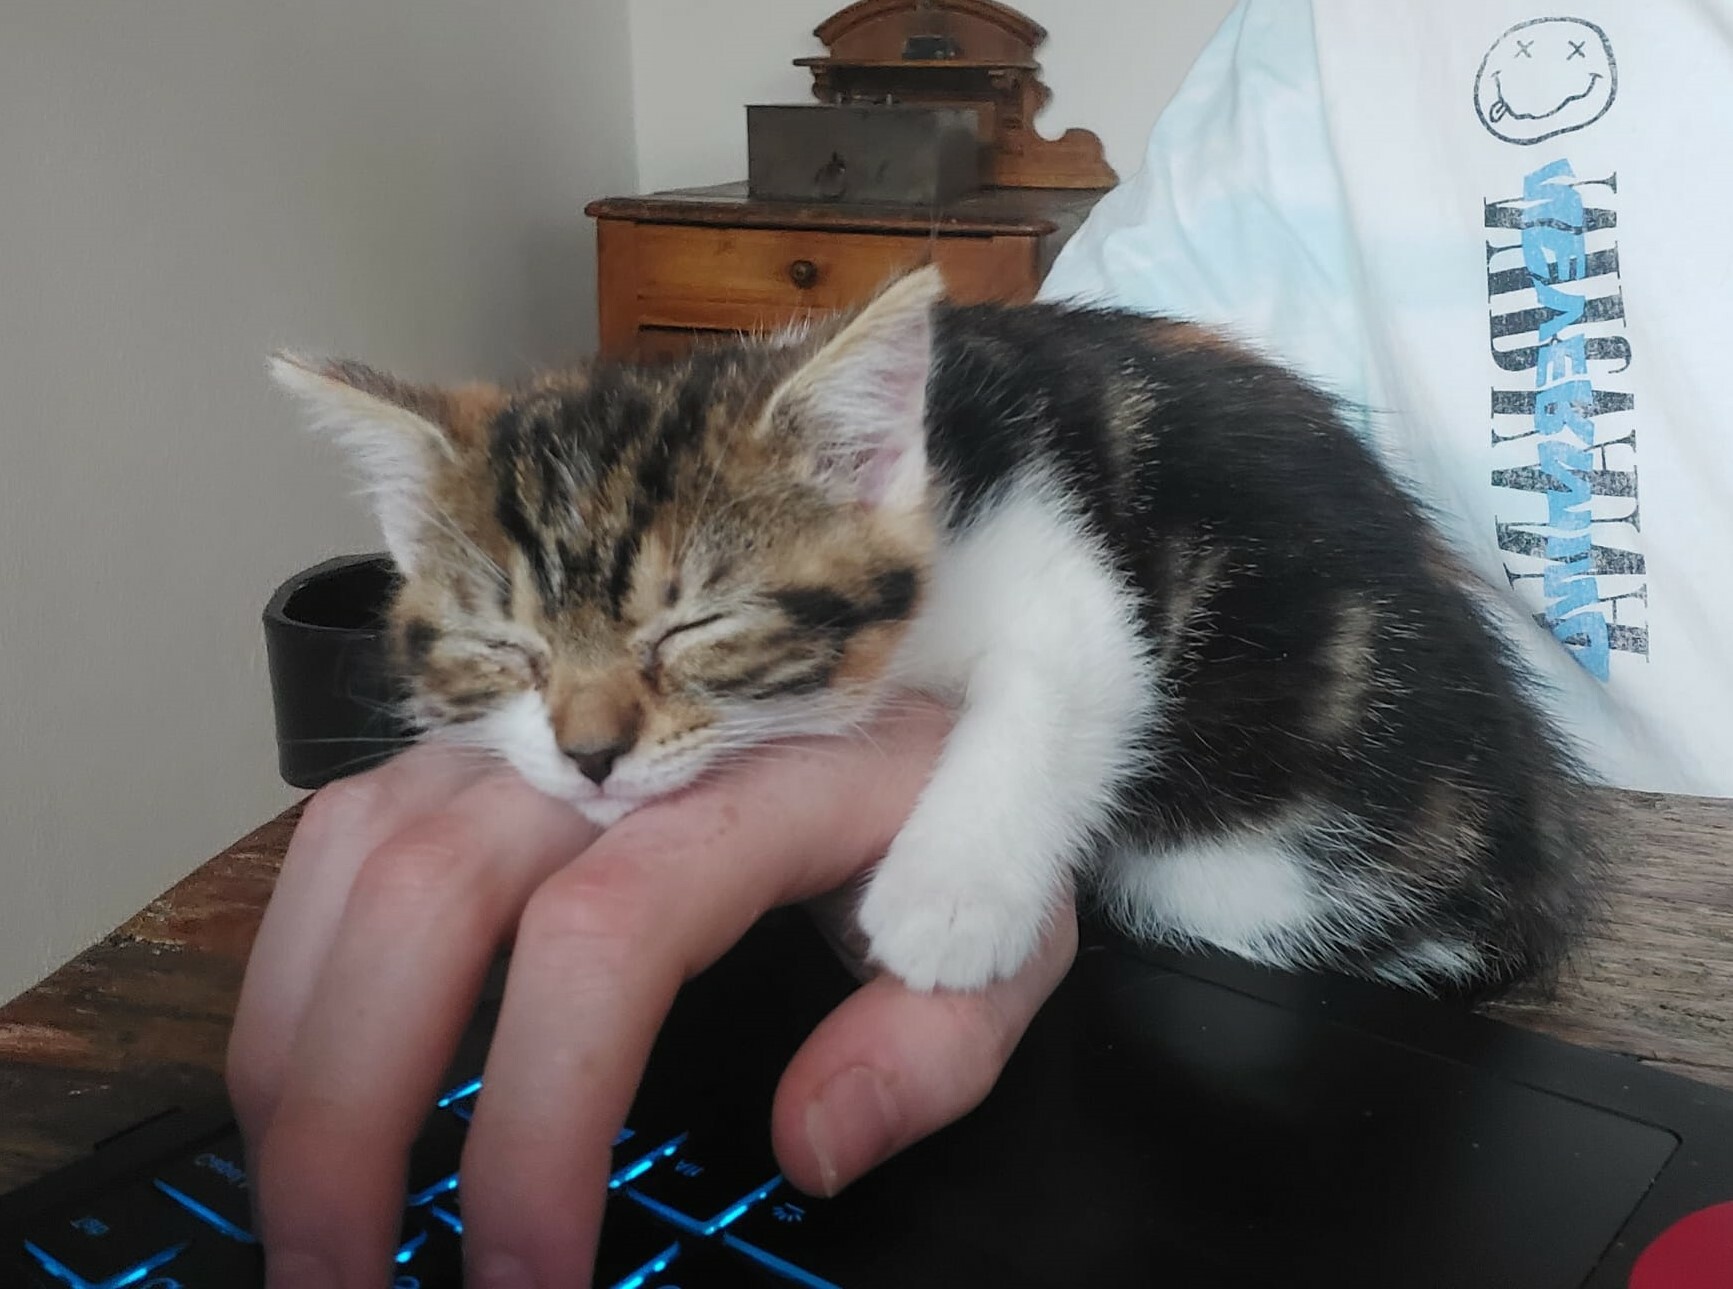 comment mon nouveau chaton aime dormir quand j’utilise mon ordinateur portable